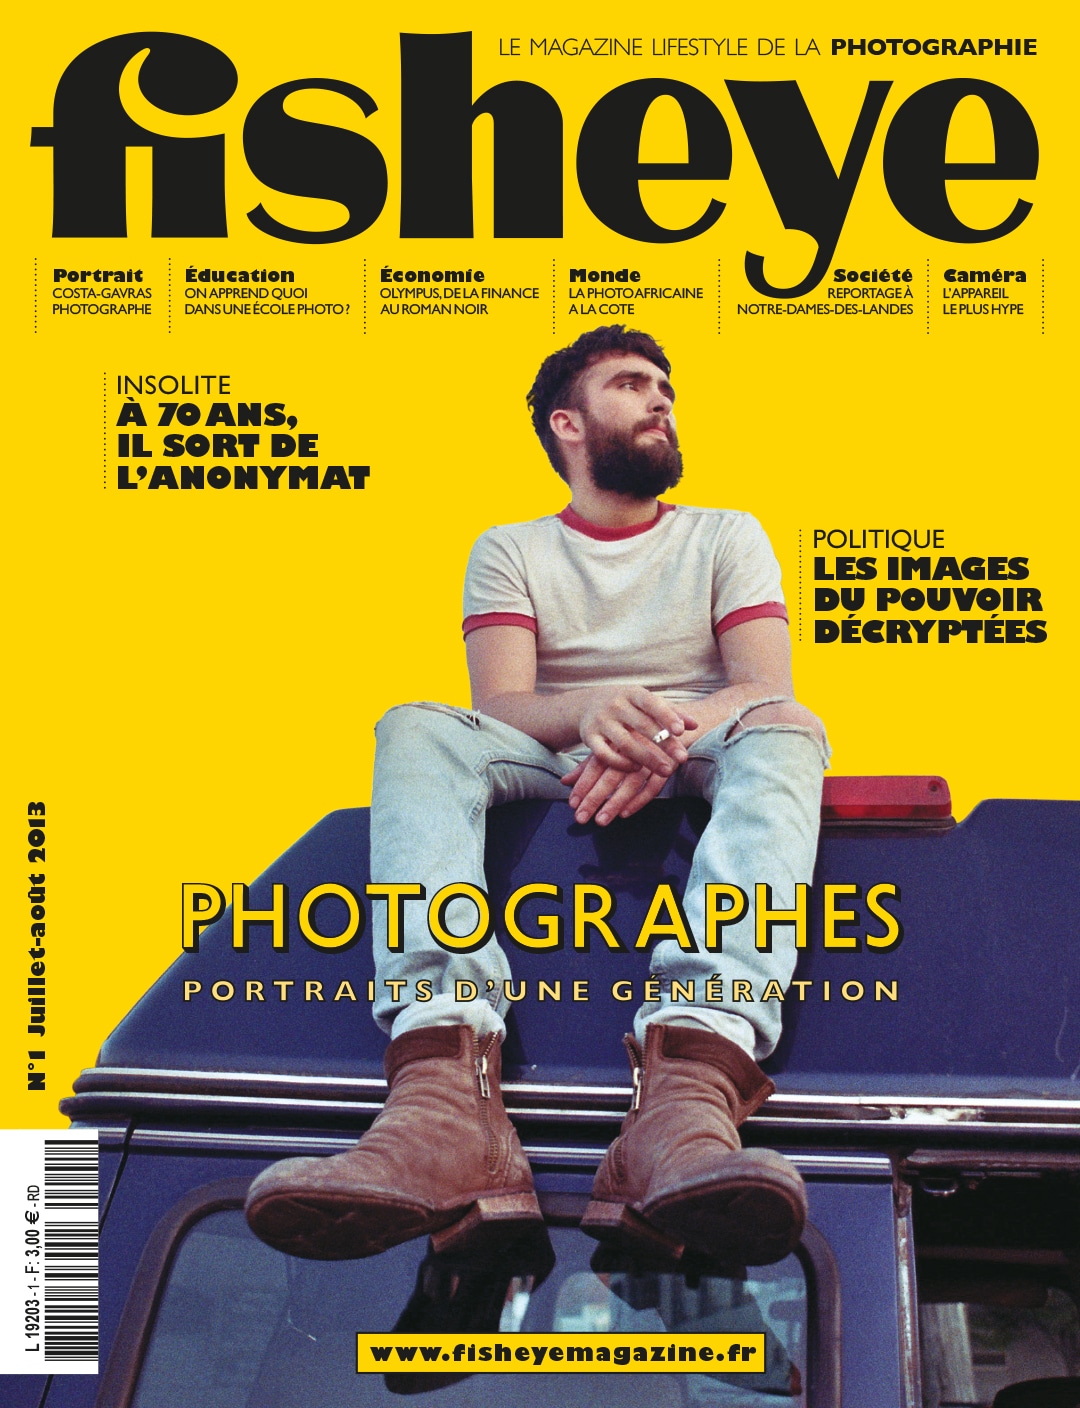 Fisheye Magazine #1 Photographes, portrait d’une génération